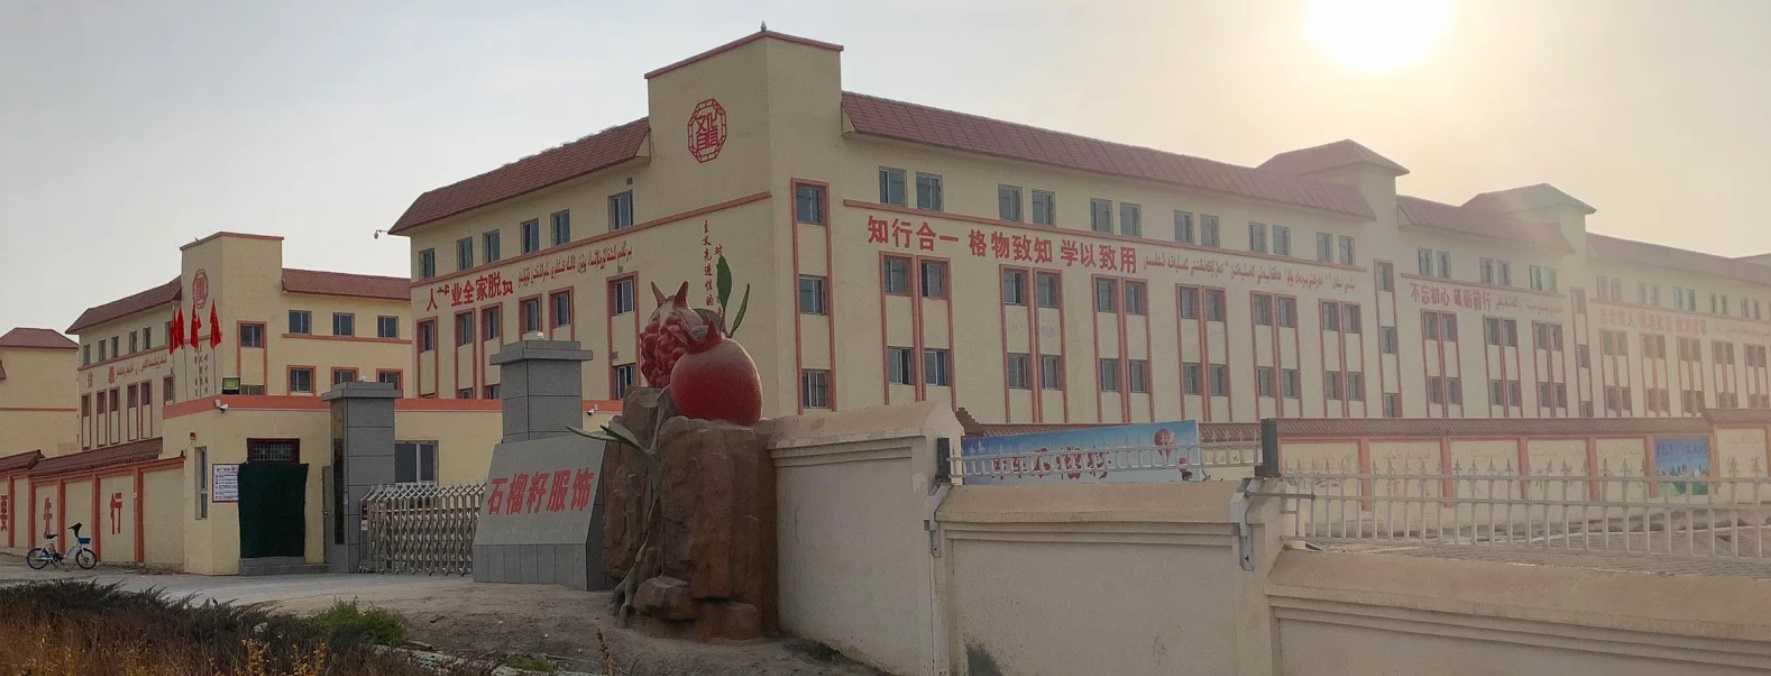 کار اجباری مسلمانان اویغور در مزارع ننگین پنبه  چین